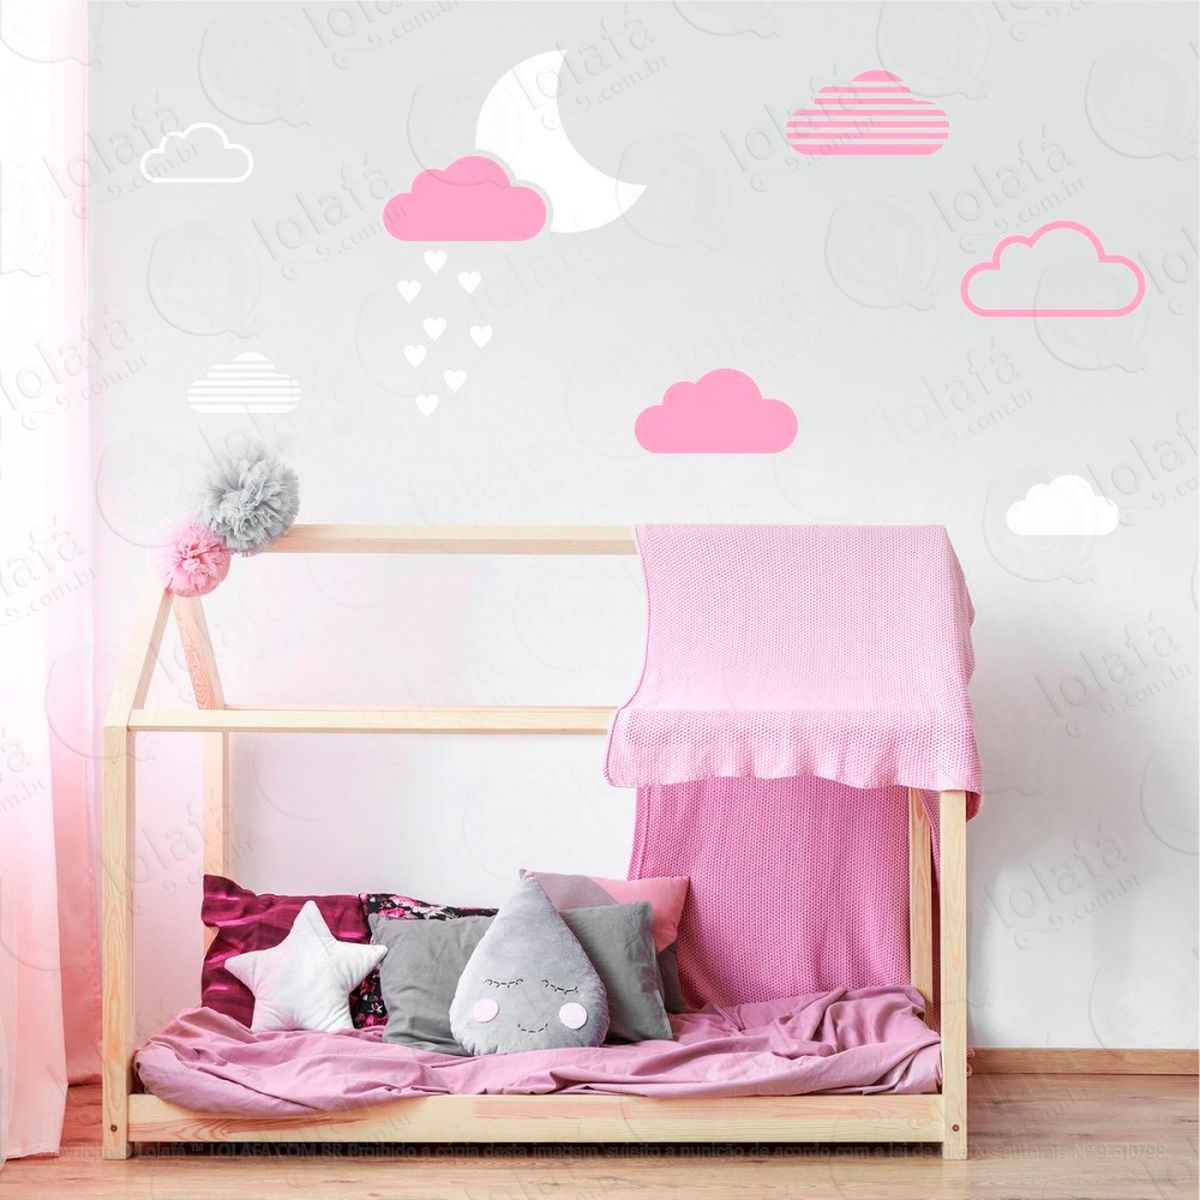 adesivos lua e nuvens 15 peças adesivos para quarto de bebê infantil - mod:885